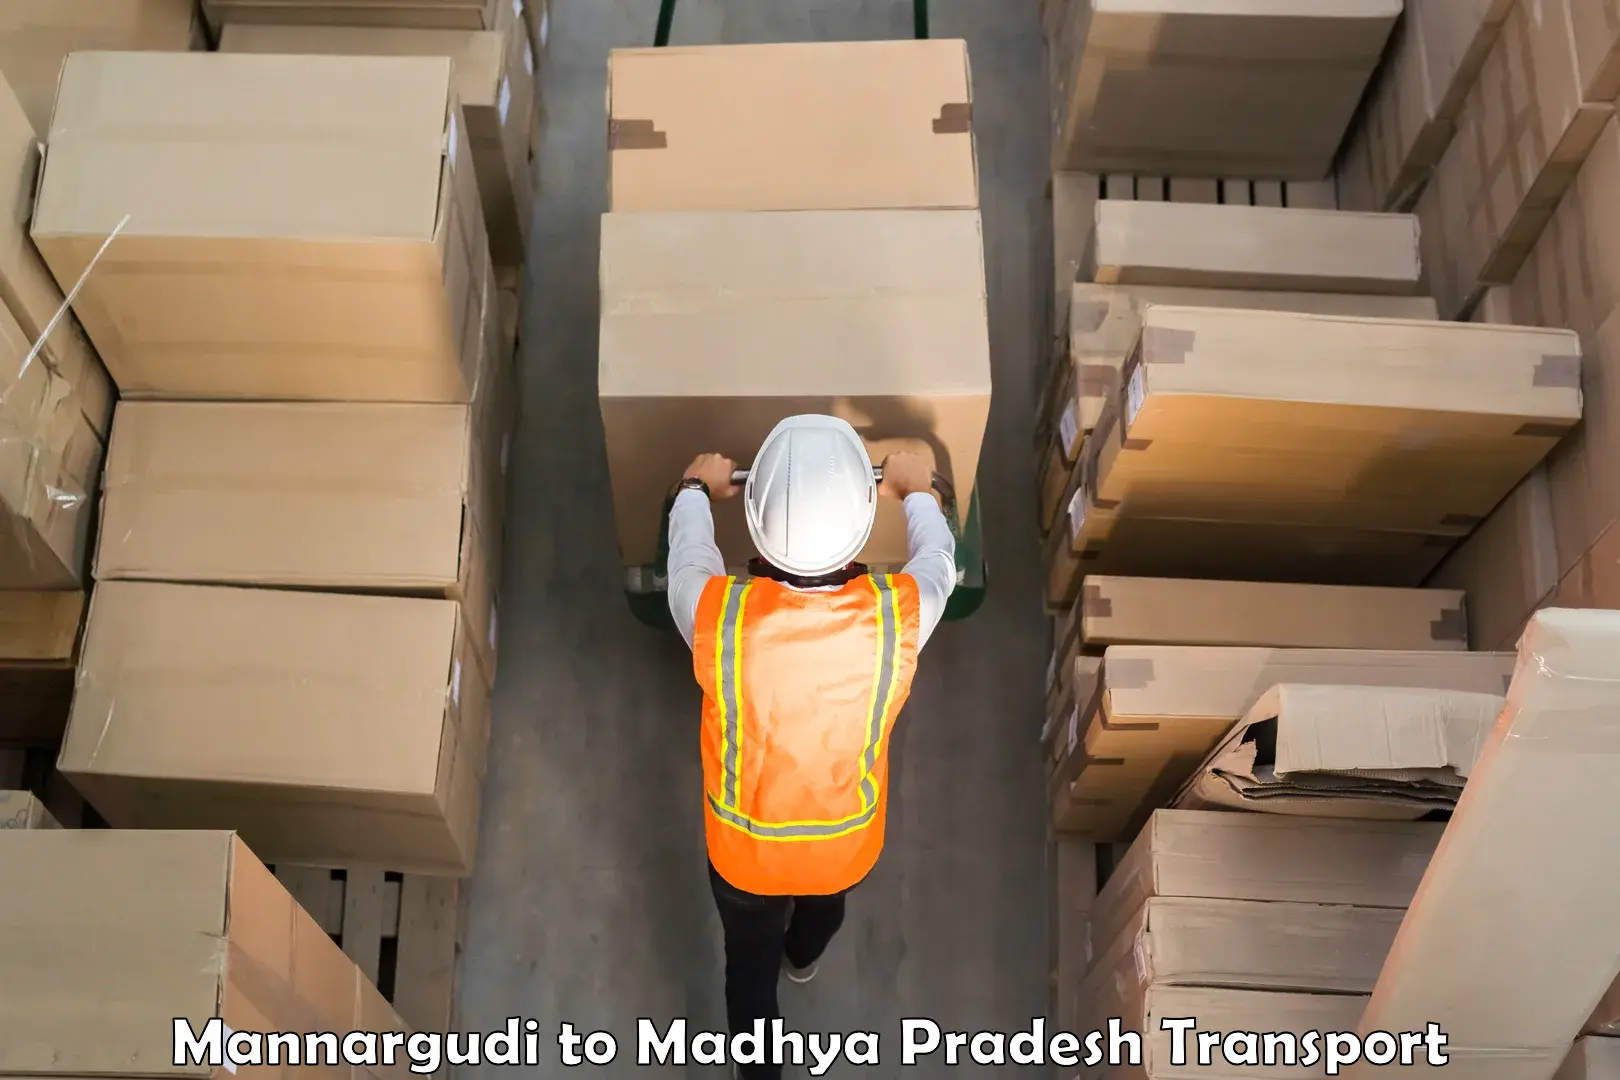 Furniture transport service Mannargudi to Chanderi